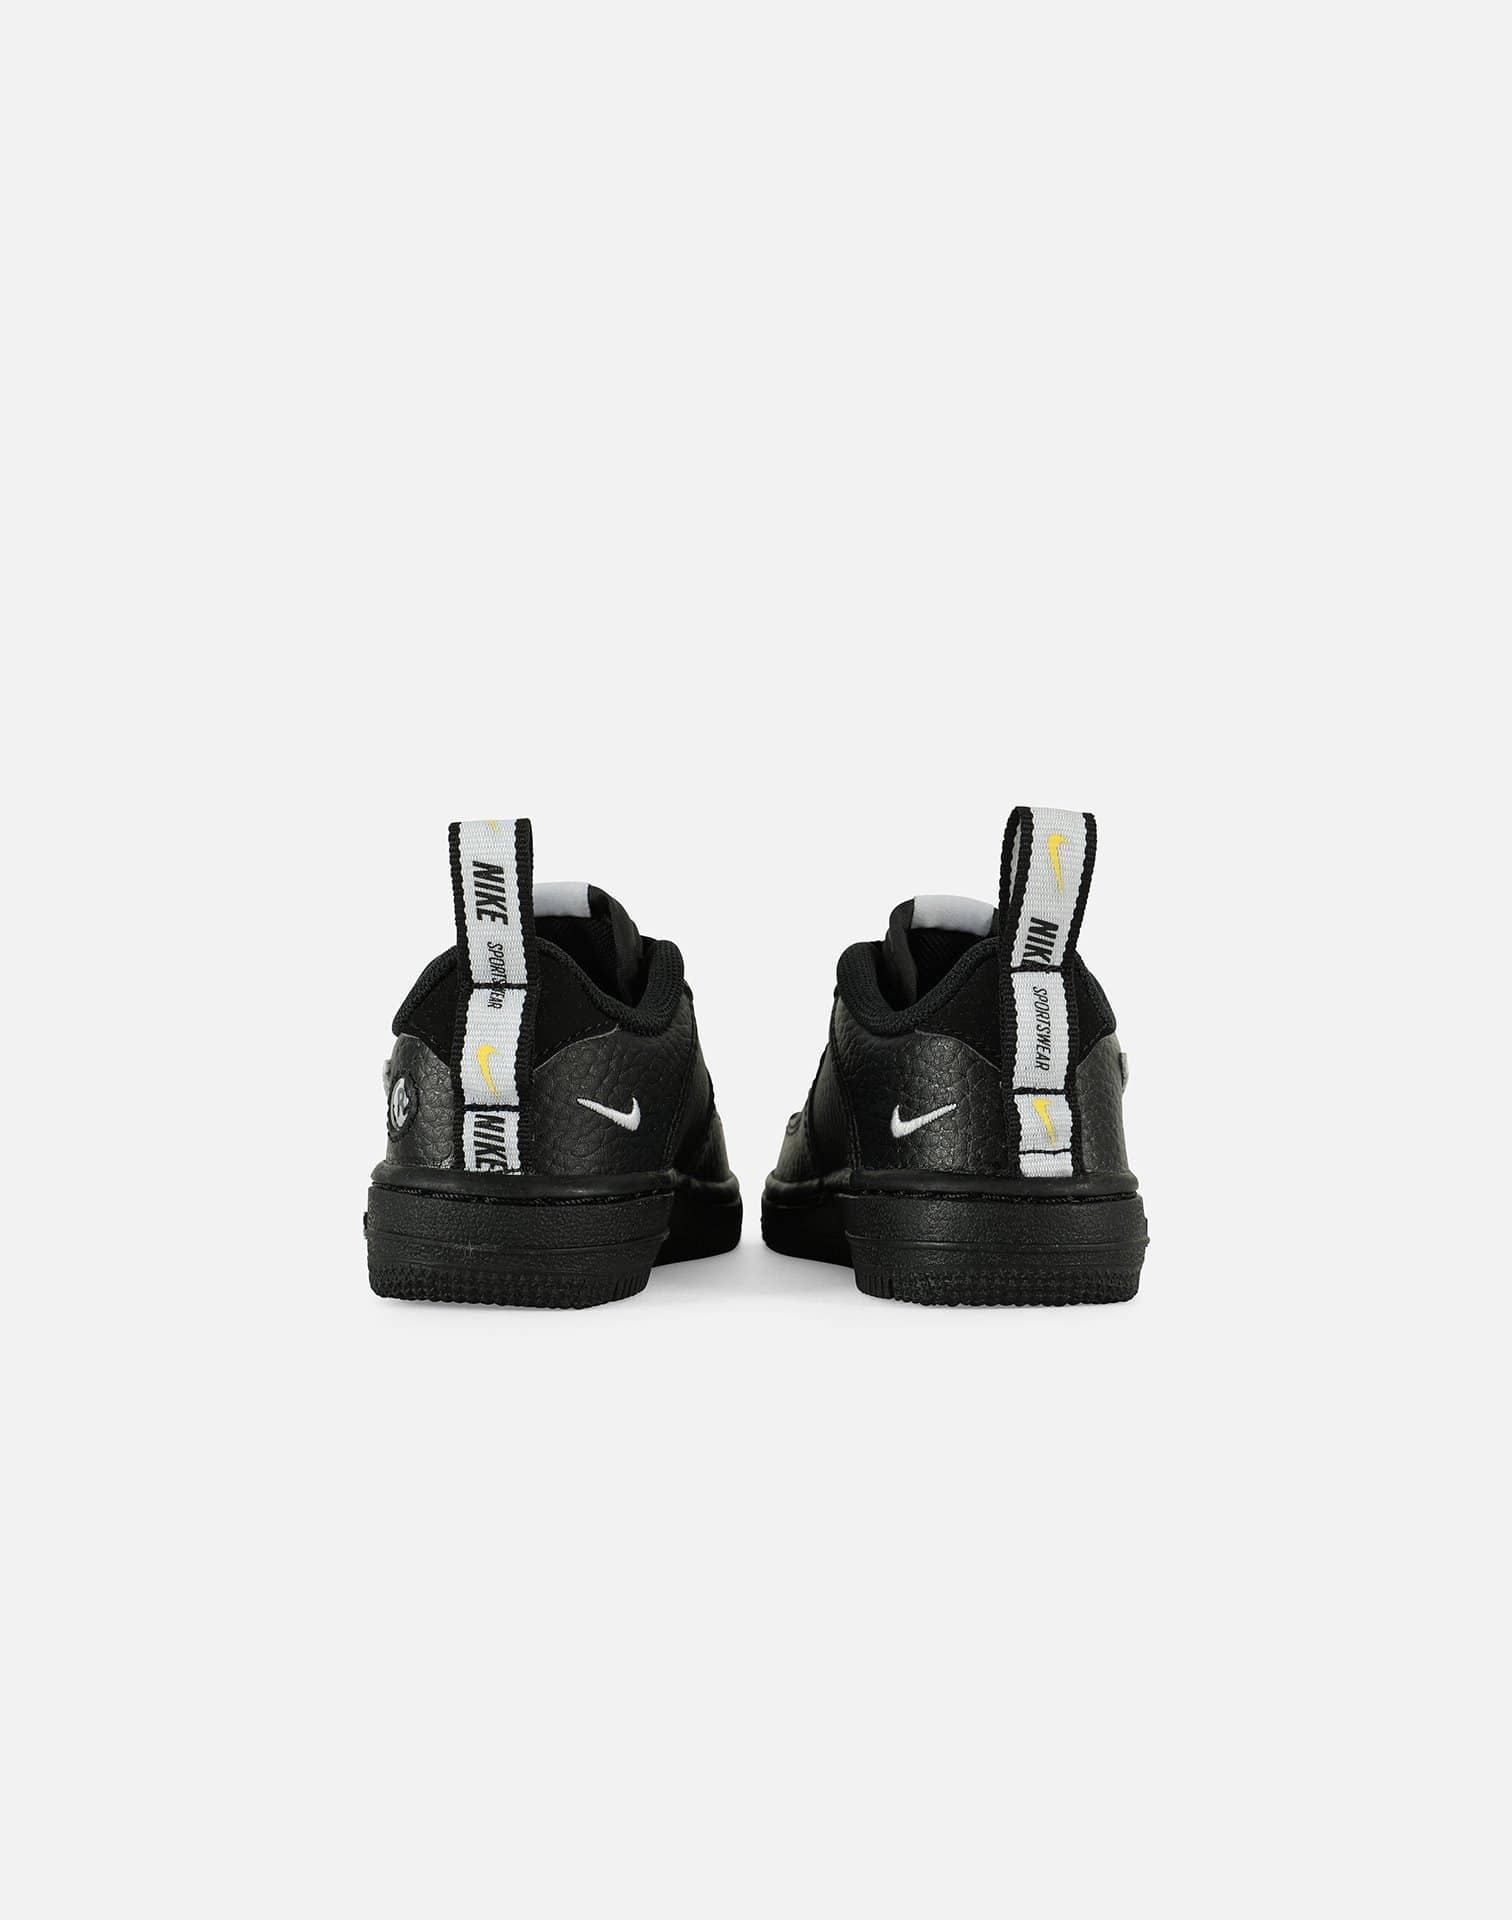 Nike Force 1 LV8 Utility Little Kids' Shoes Volt-White-Wolf Grey-Black  av4272-700 